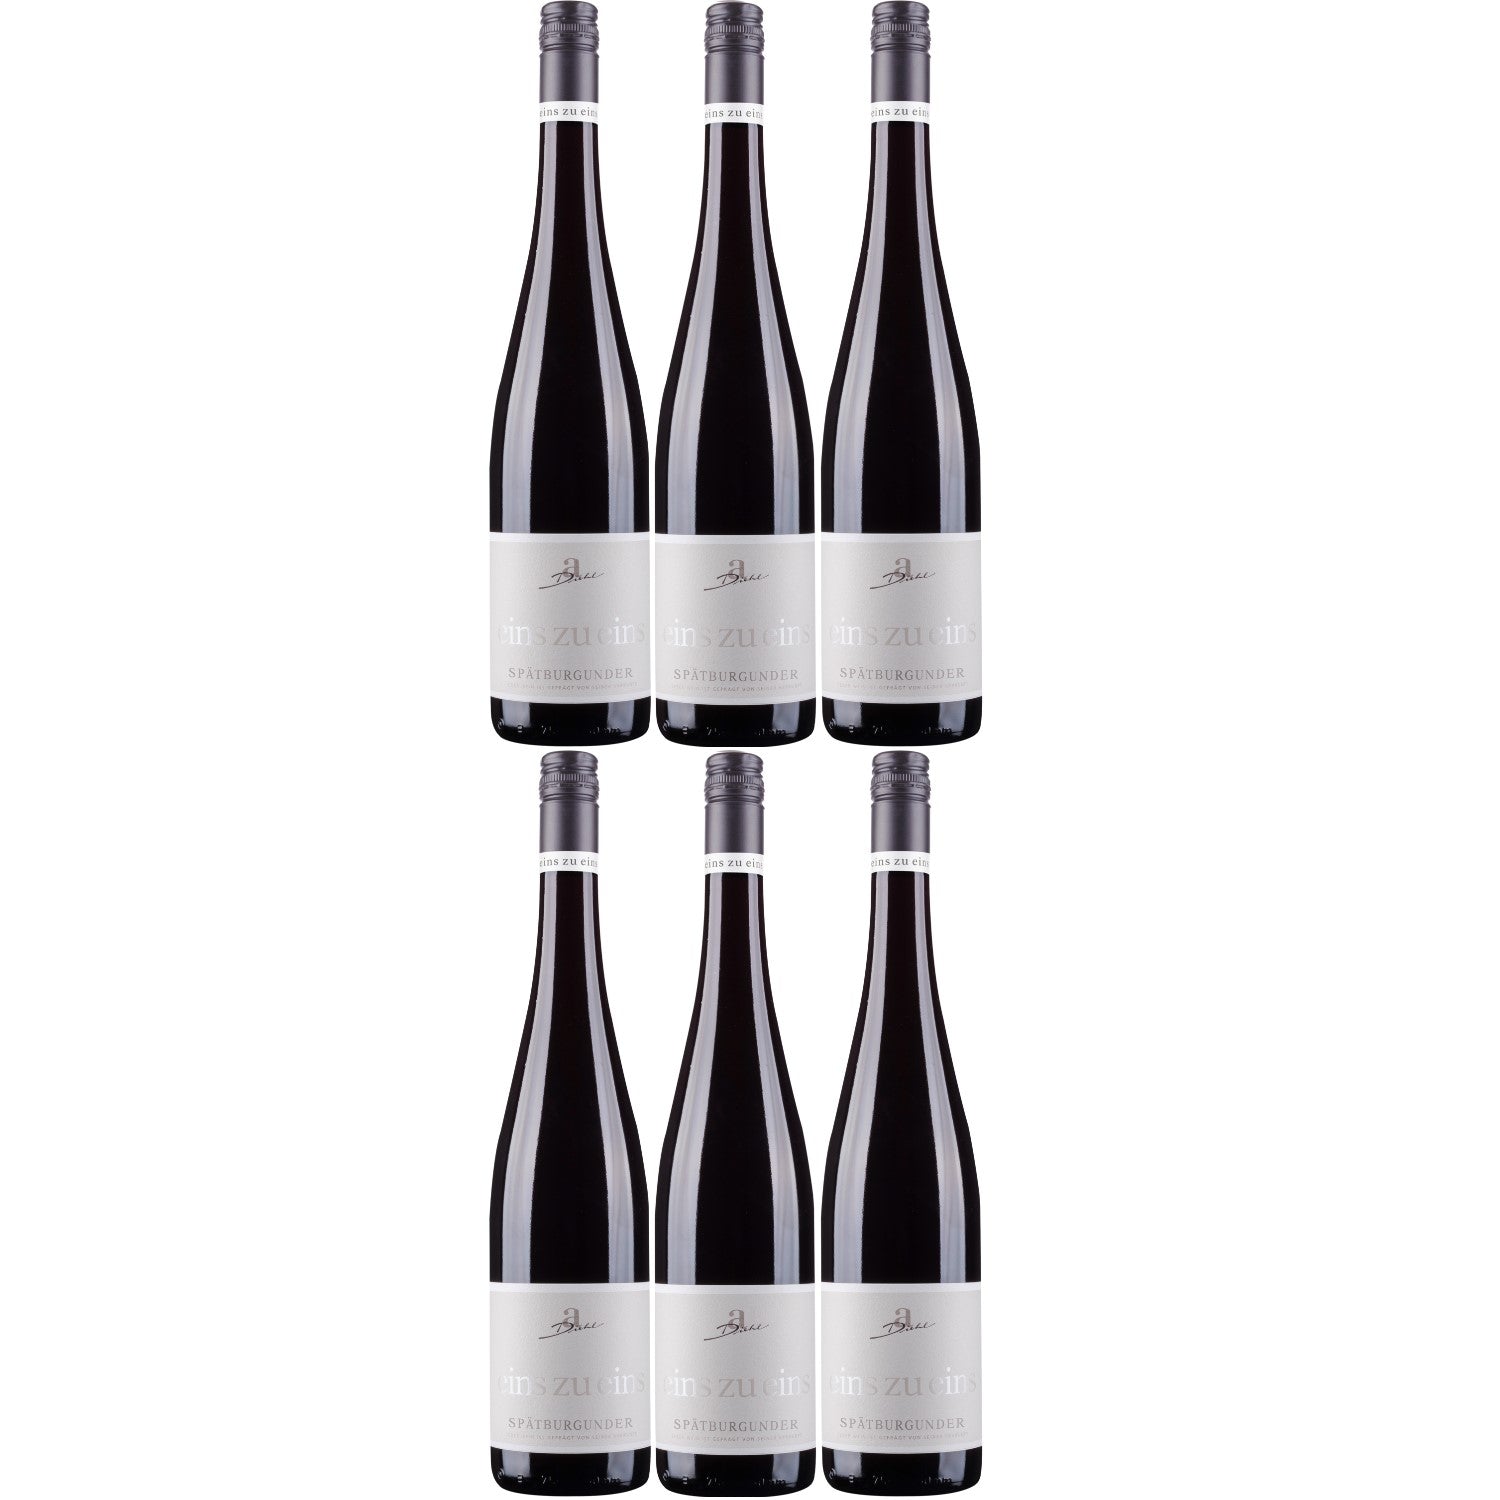 A. Diehl Spätburgunder eins zu eins Rotwein Wein lieblich QbA Deutschland (6 x 0.75l) - Versanel -